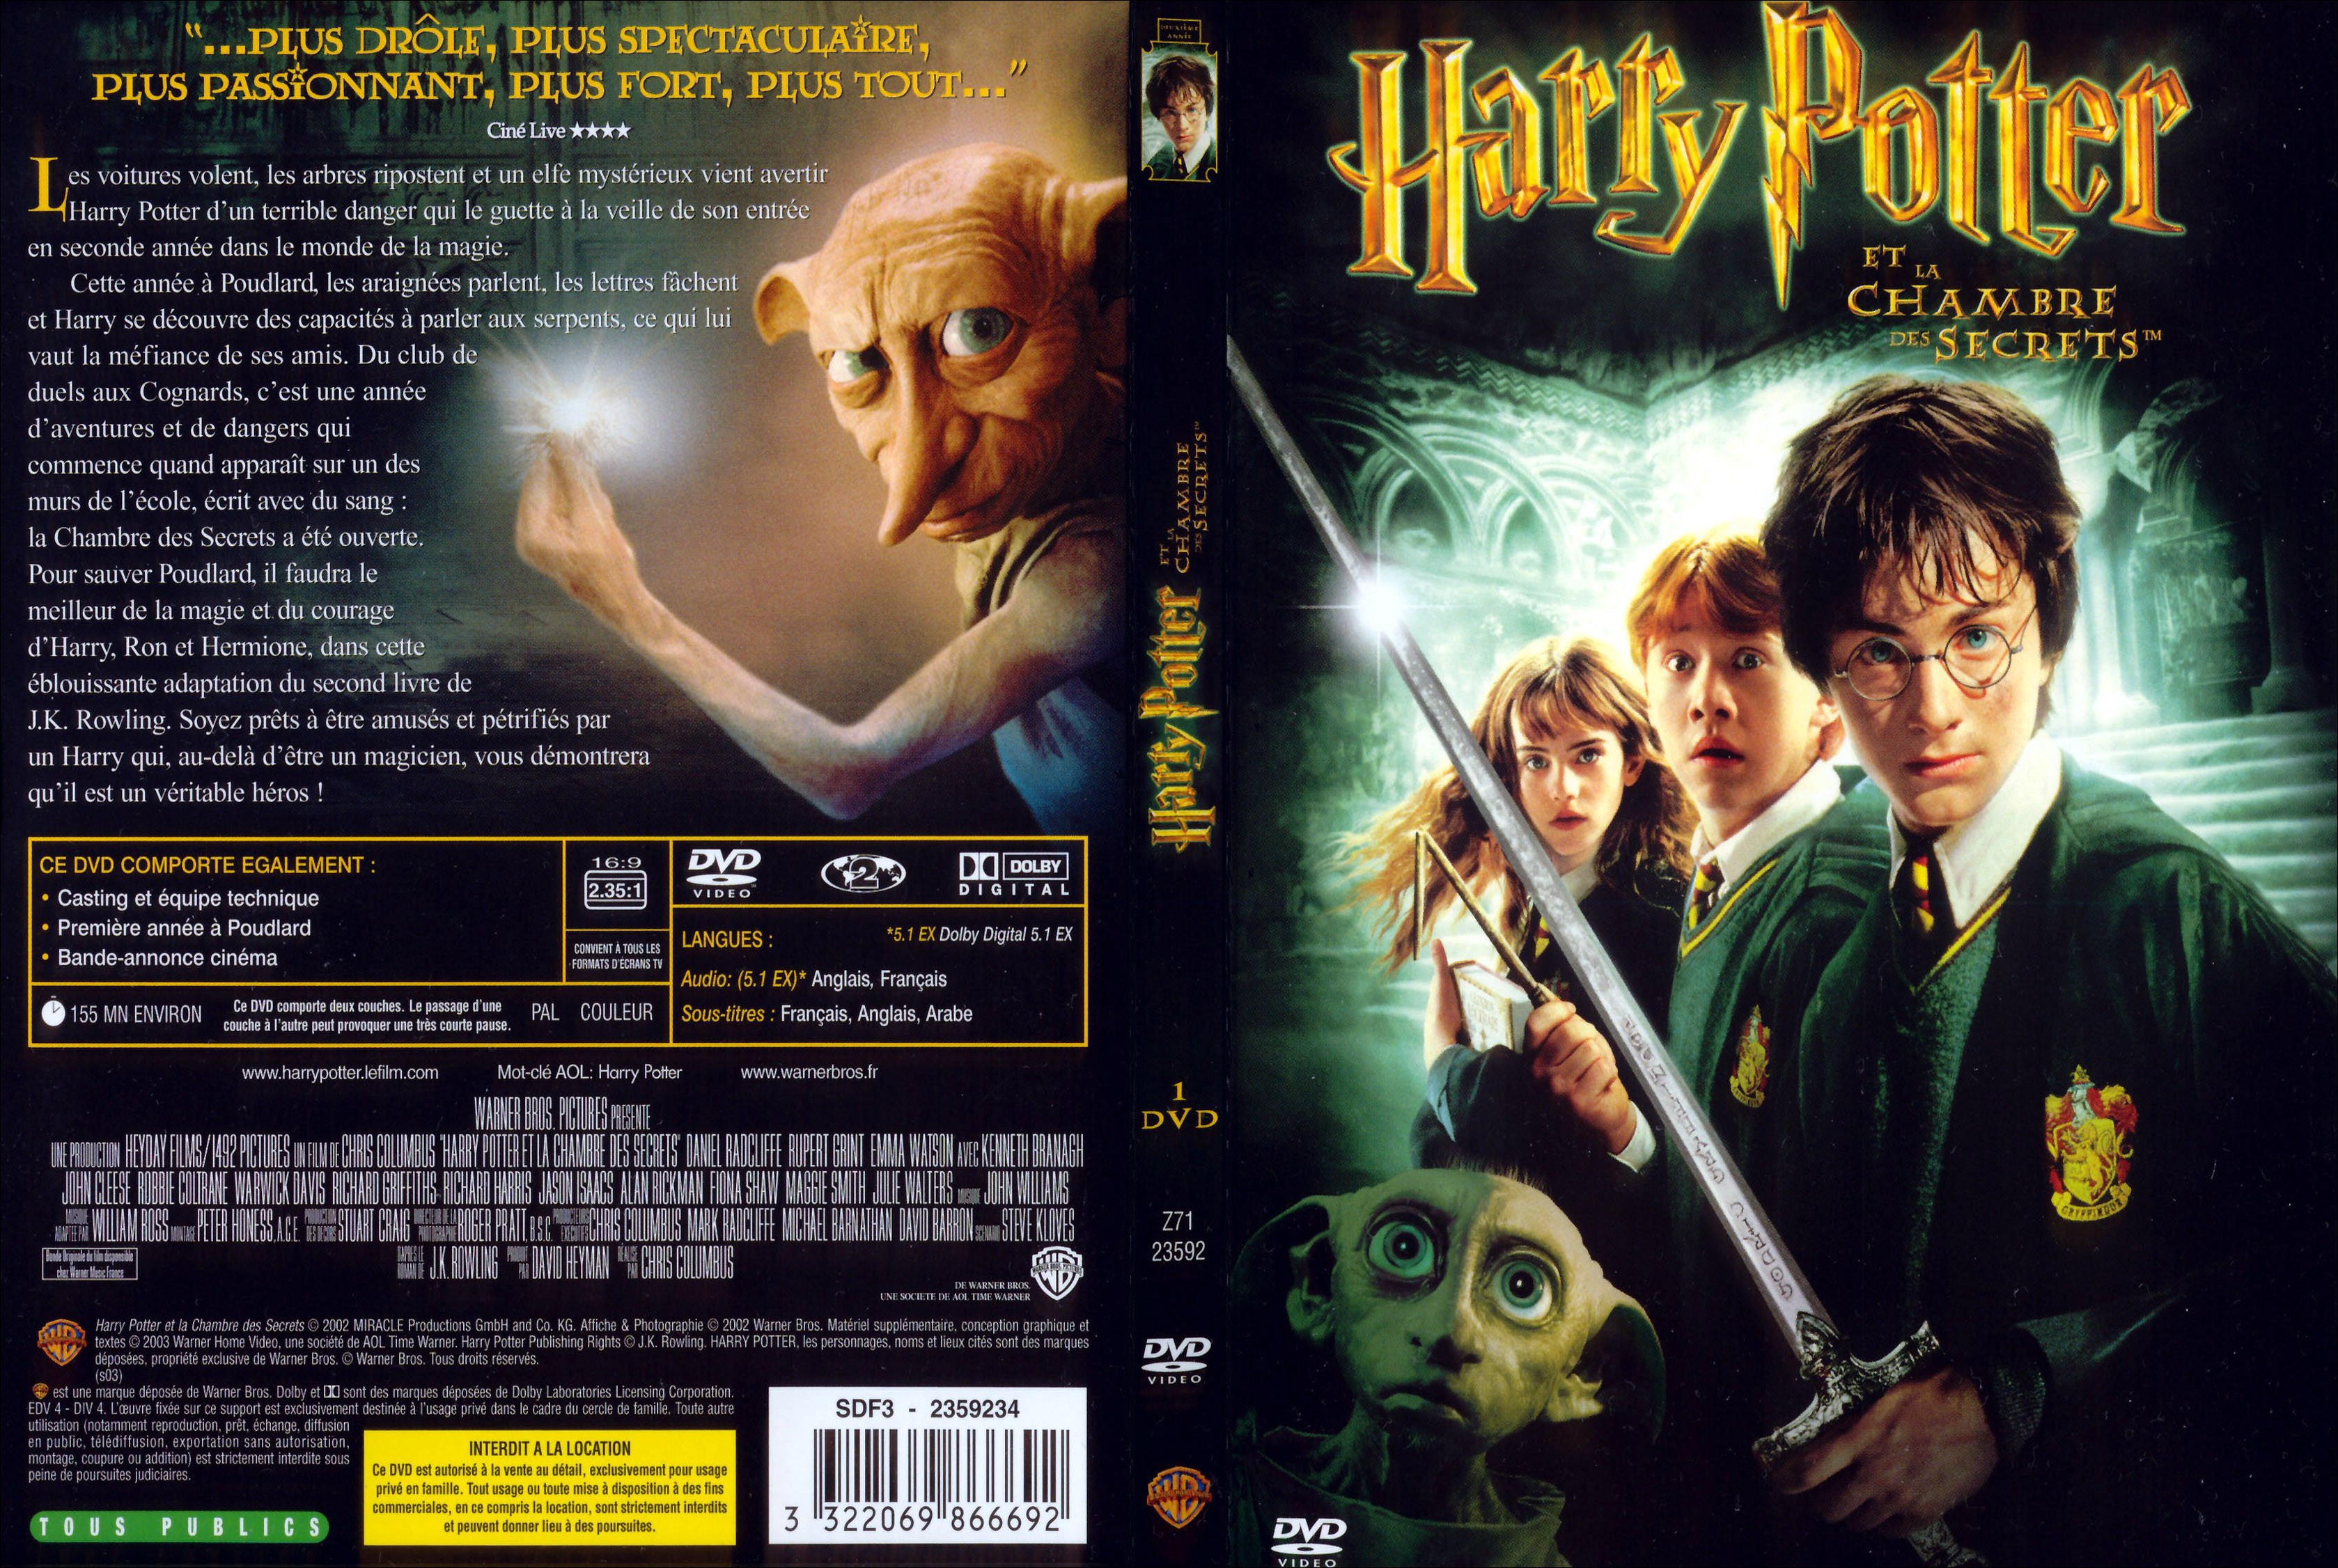 Jaquette DVD Harry Potter et la chambre des secrets